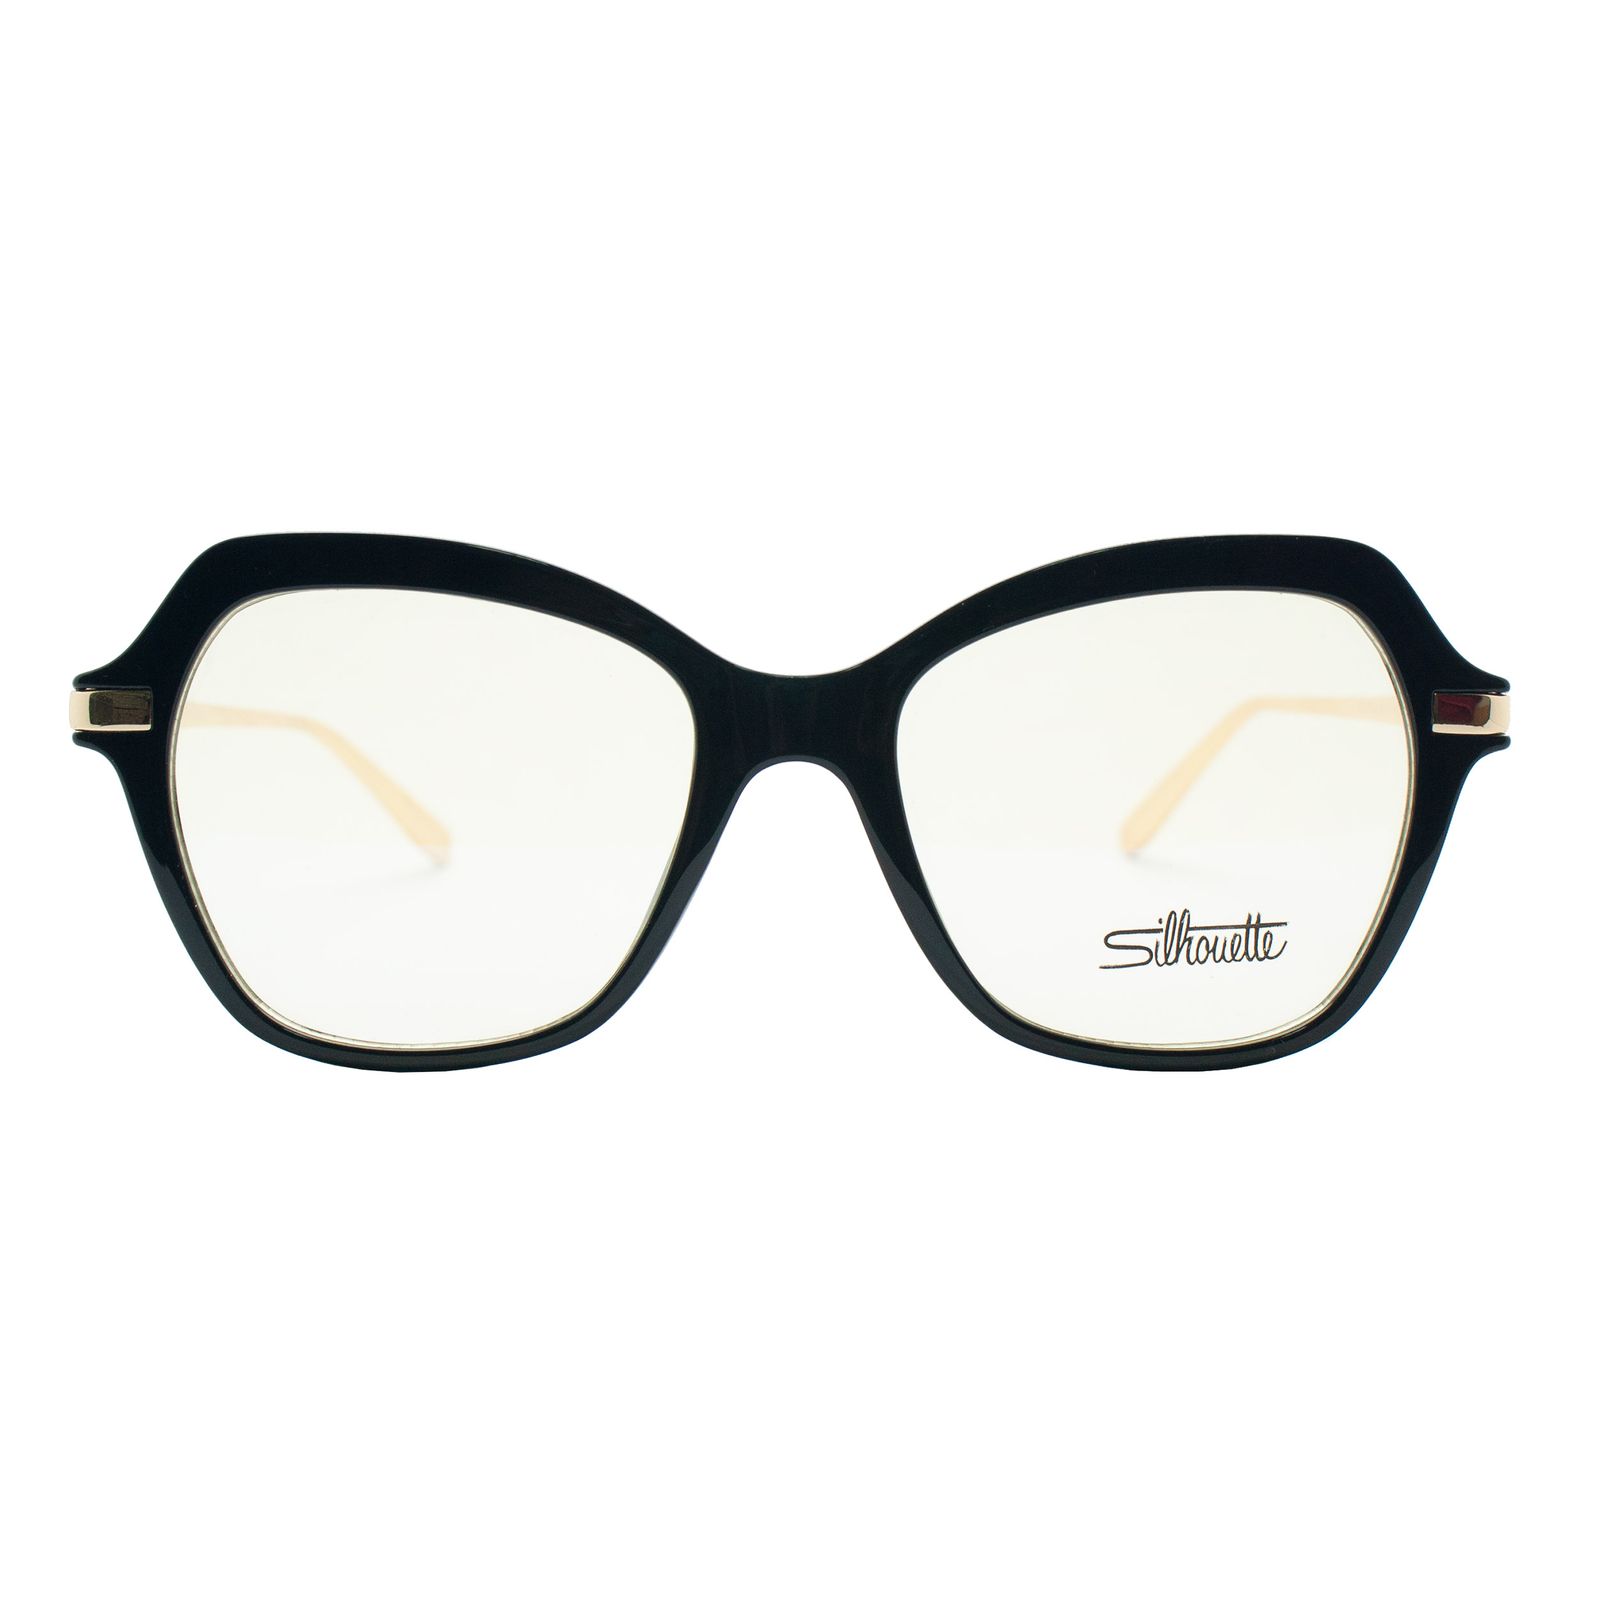 فریم عینک طبی سیلوئت مدل 92328 C1 -  - 2